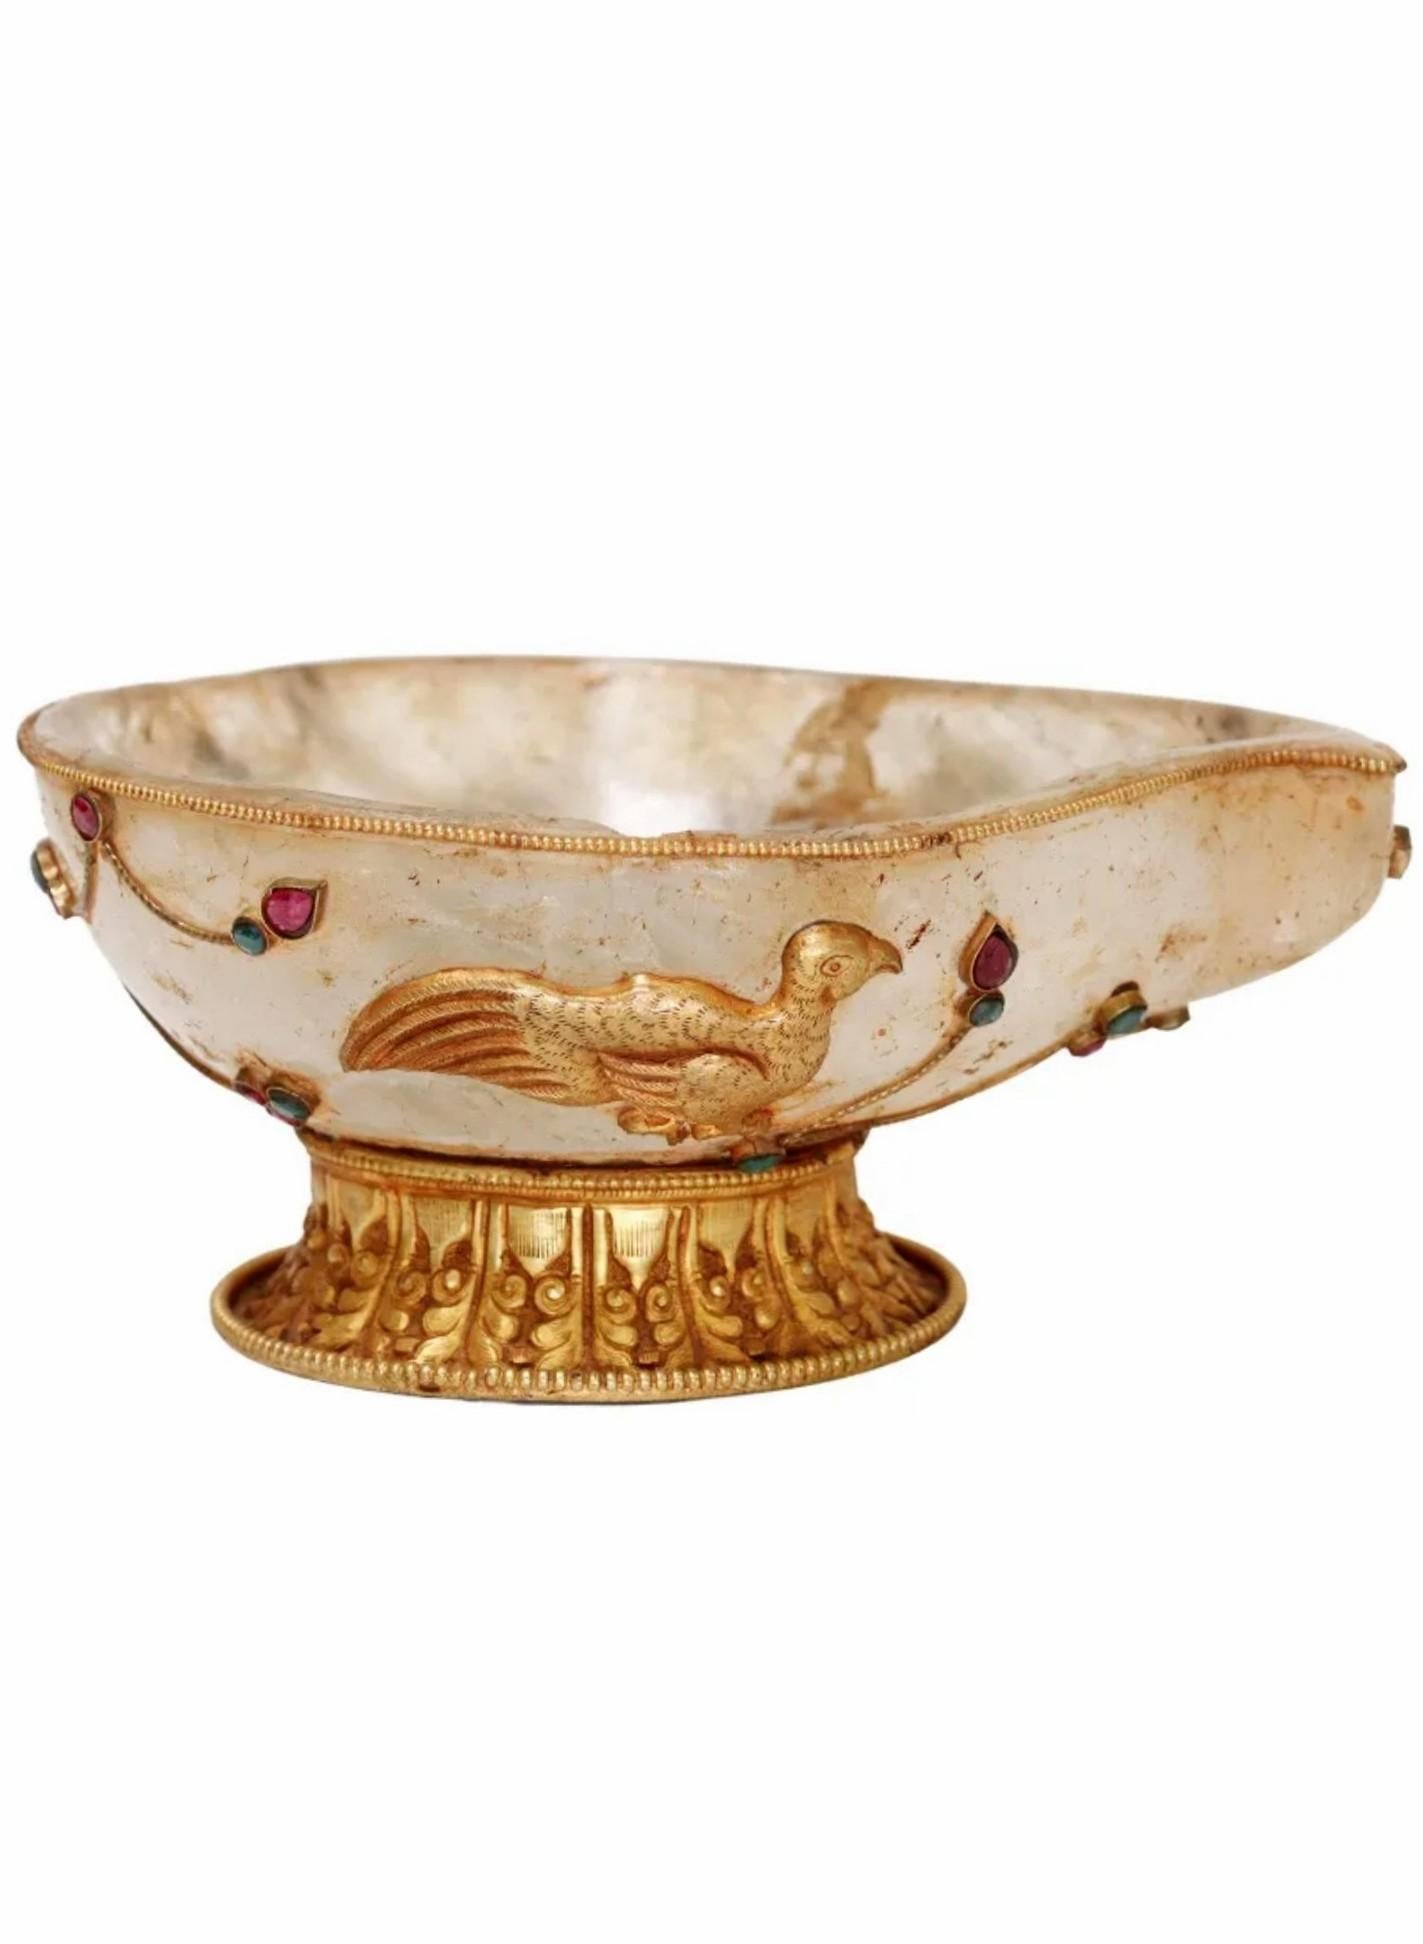 Tibetan Antique Gemstone Gilt Bronze Mounted Rock Crystal Vessel Offering Bowl For Sale